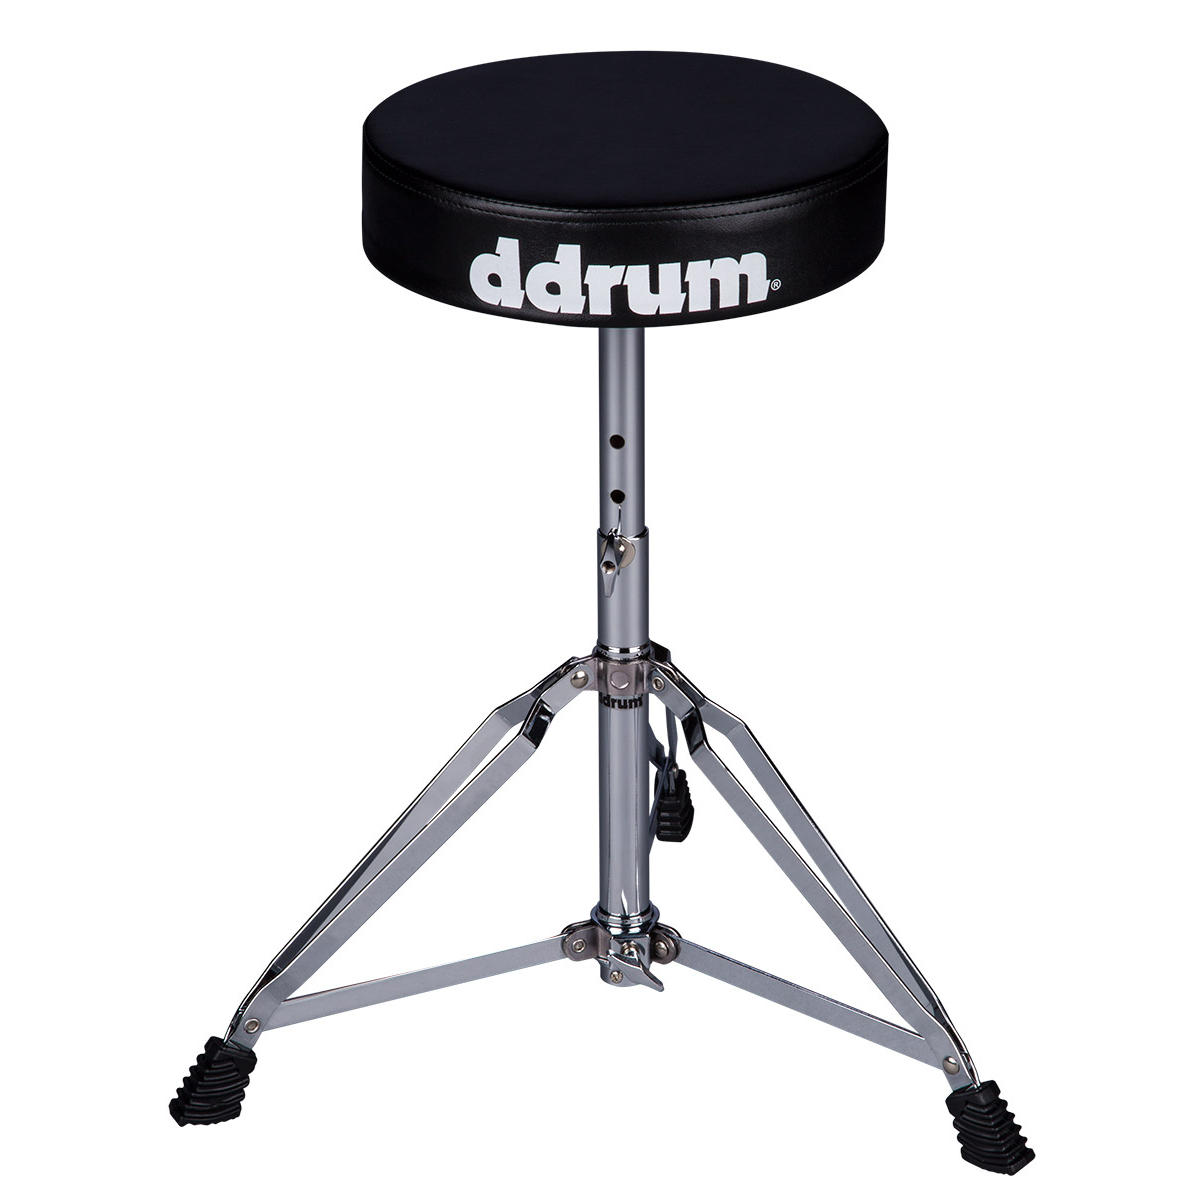 DDRUM RXDT - стул для барабанщика